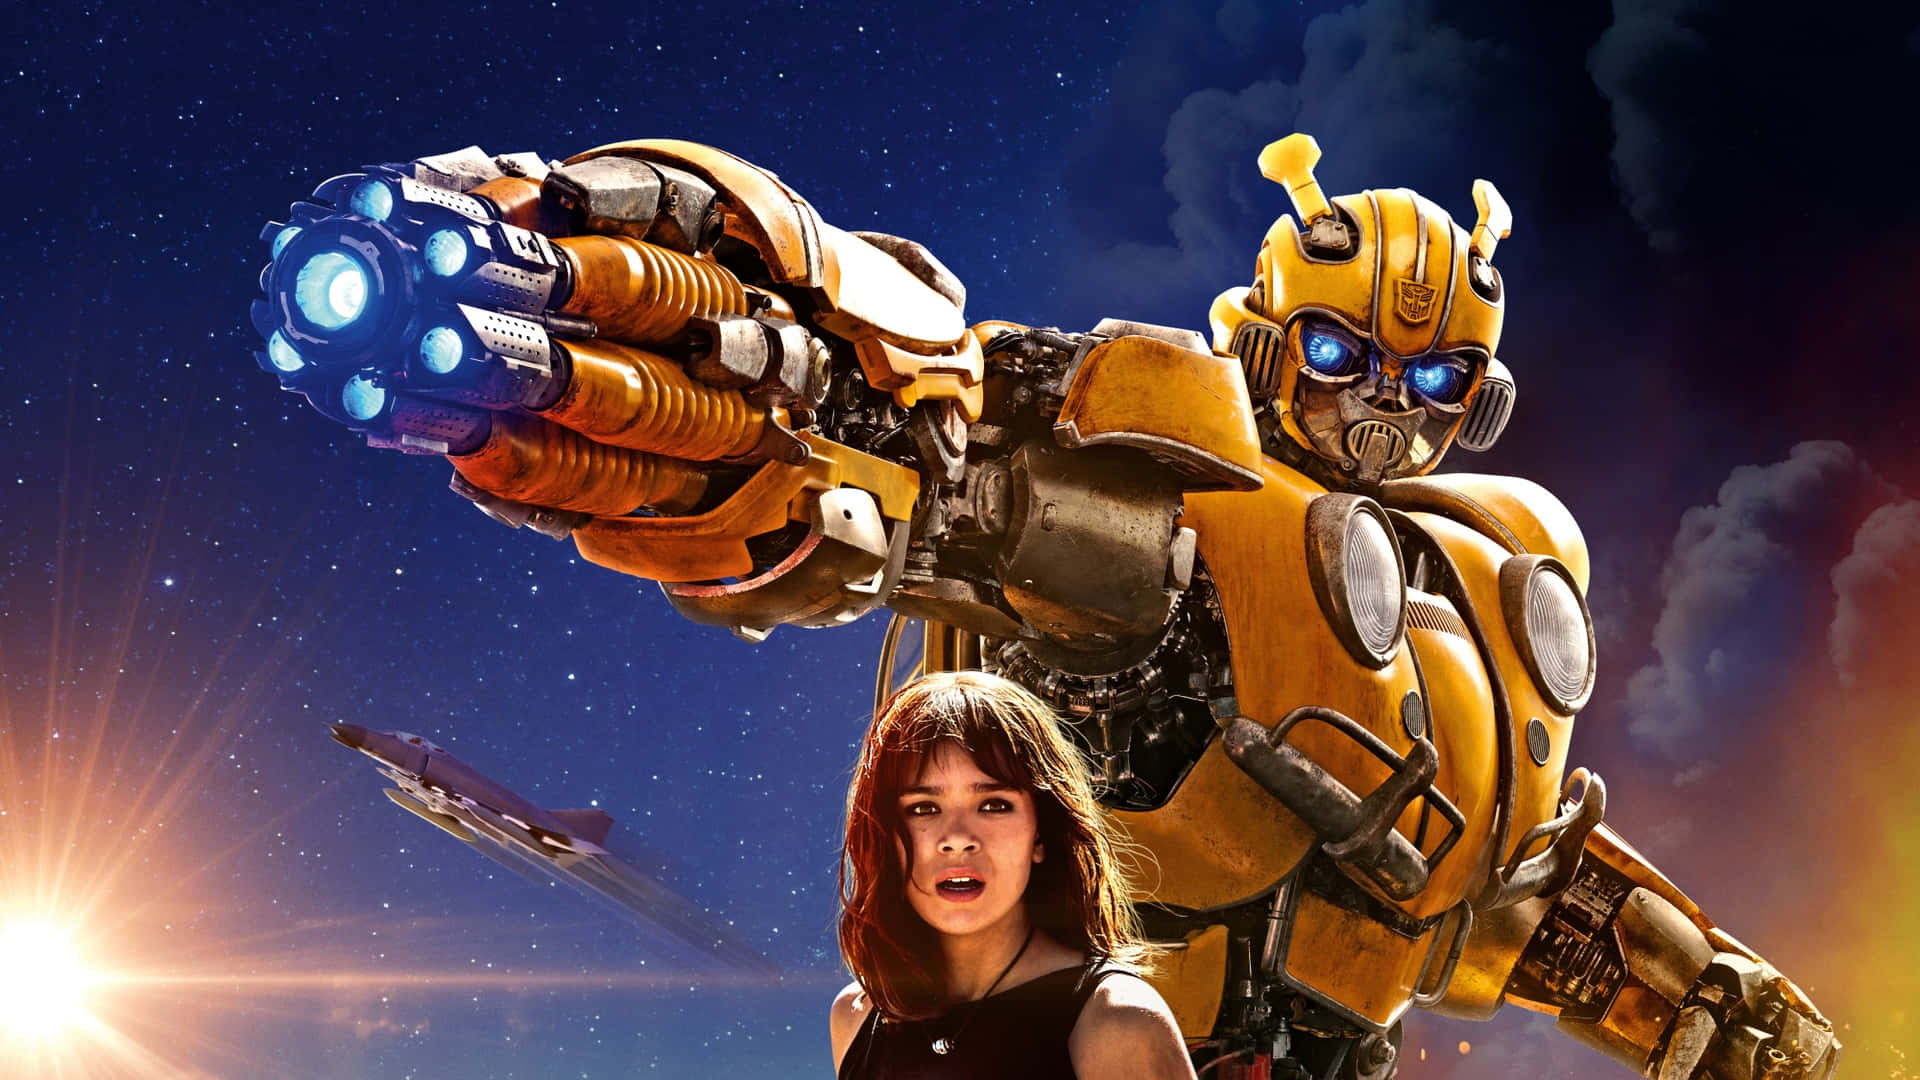 Transformersfilmpostern Med En Kvinna Och En Robot.